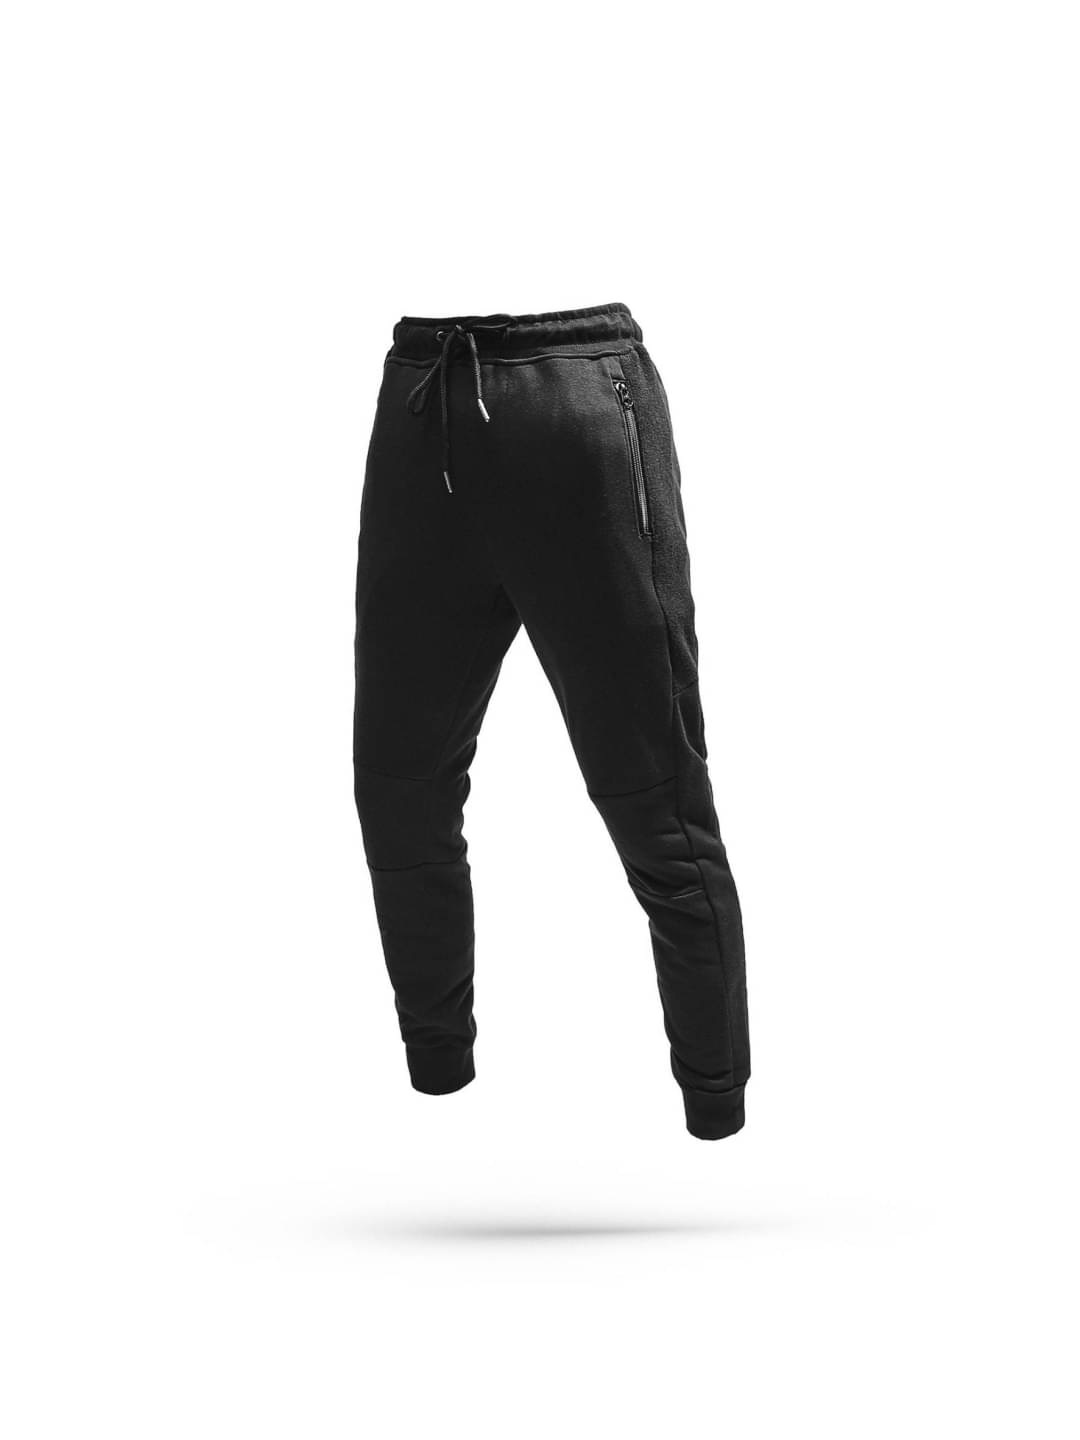 Gursewak shop (asr) on Instagram: Formal pants 👖 ZARA only black